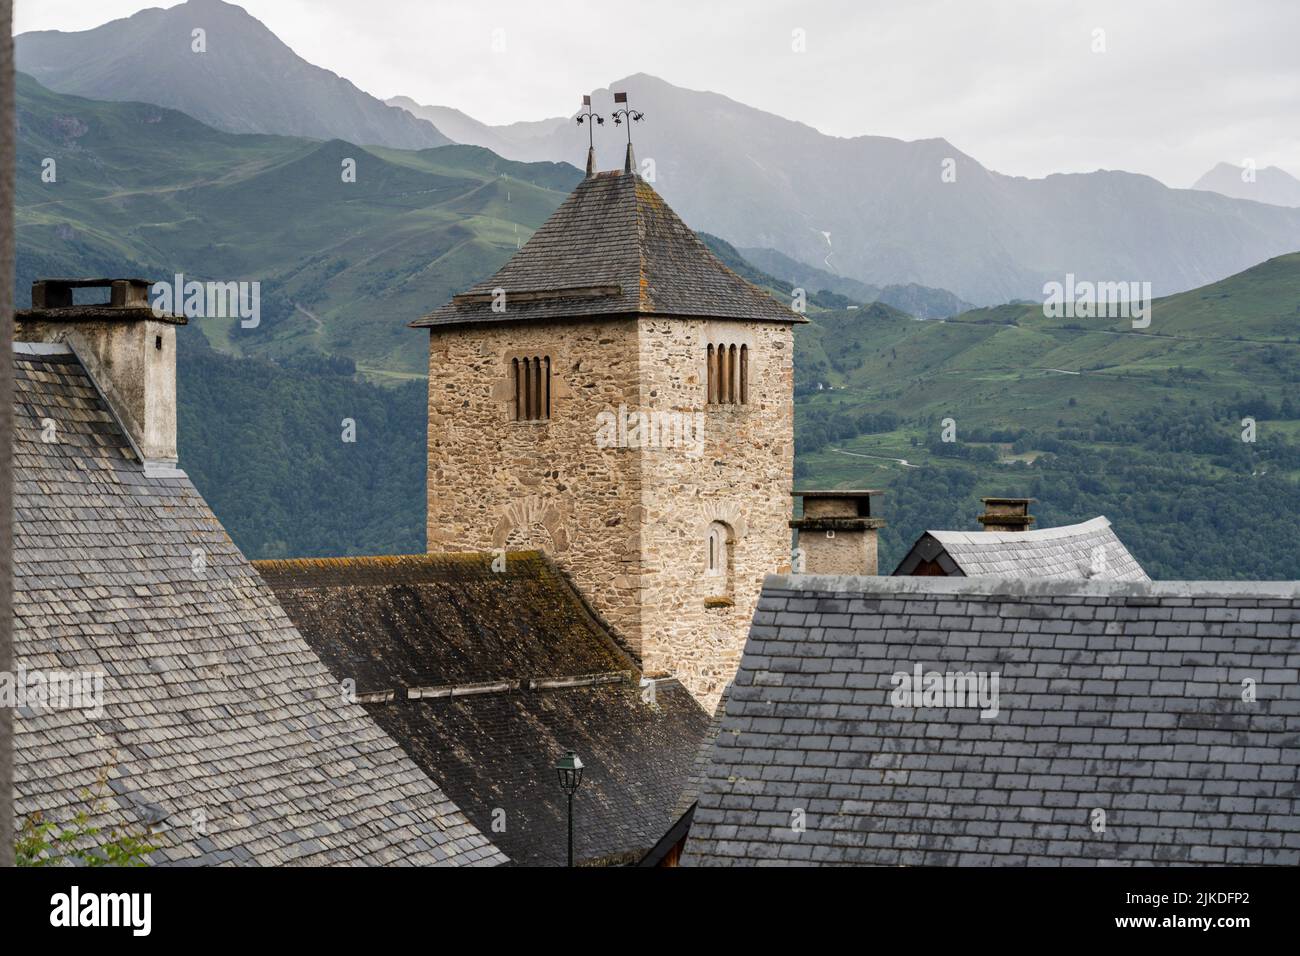 Mont village, Louron valley, Occitanie, Pyrenean mountain range, France. Stock Photo